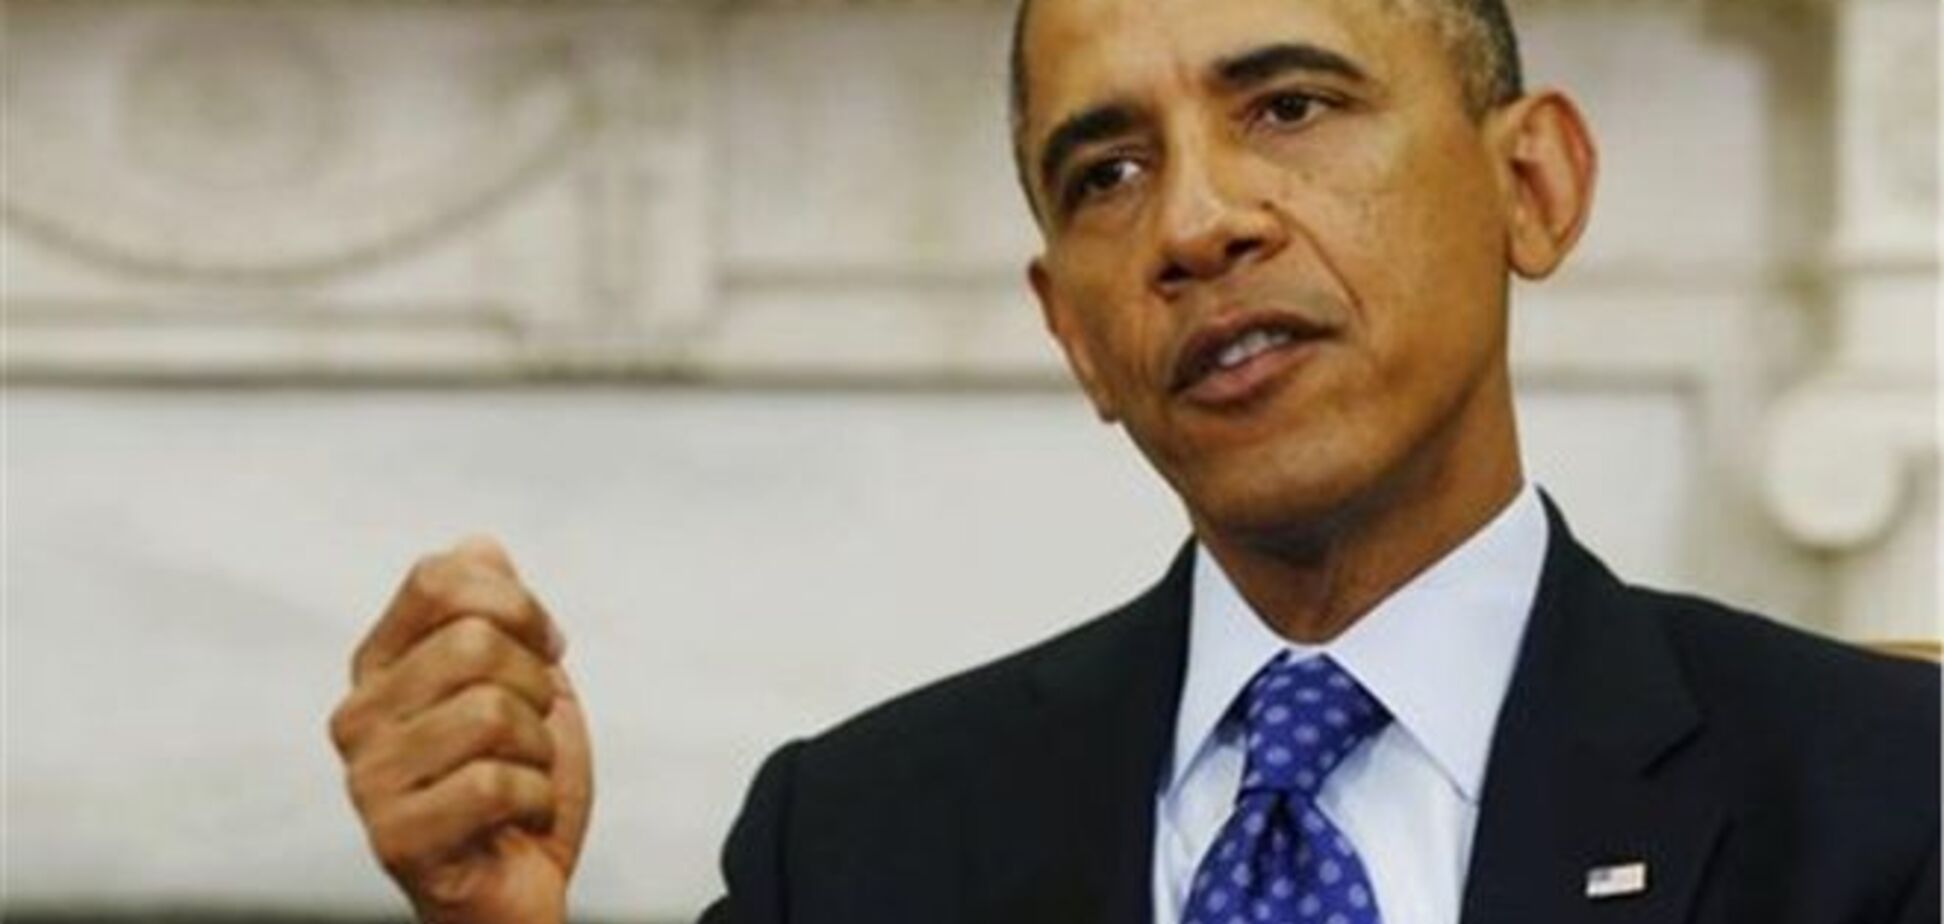 Сенатори просять Обаму ще більше посилити санкції проти Ірану